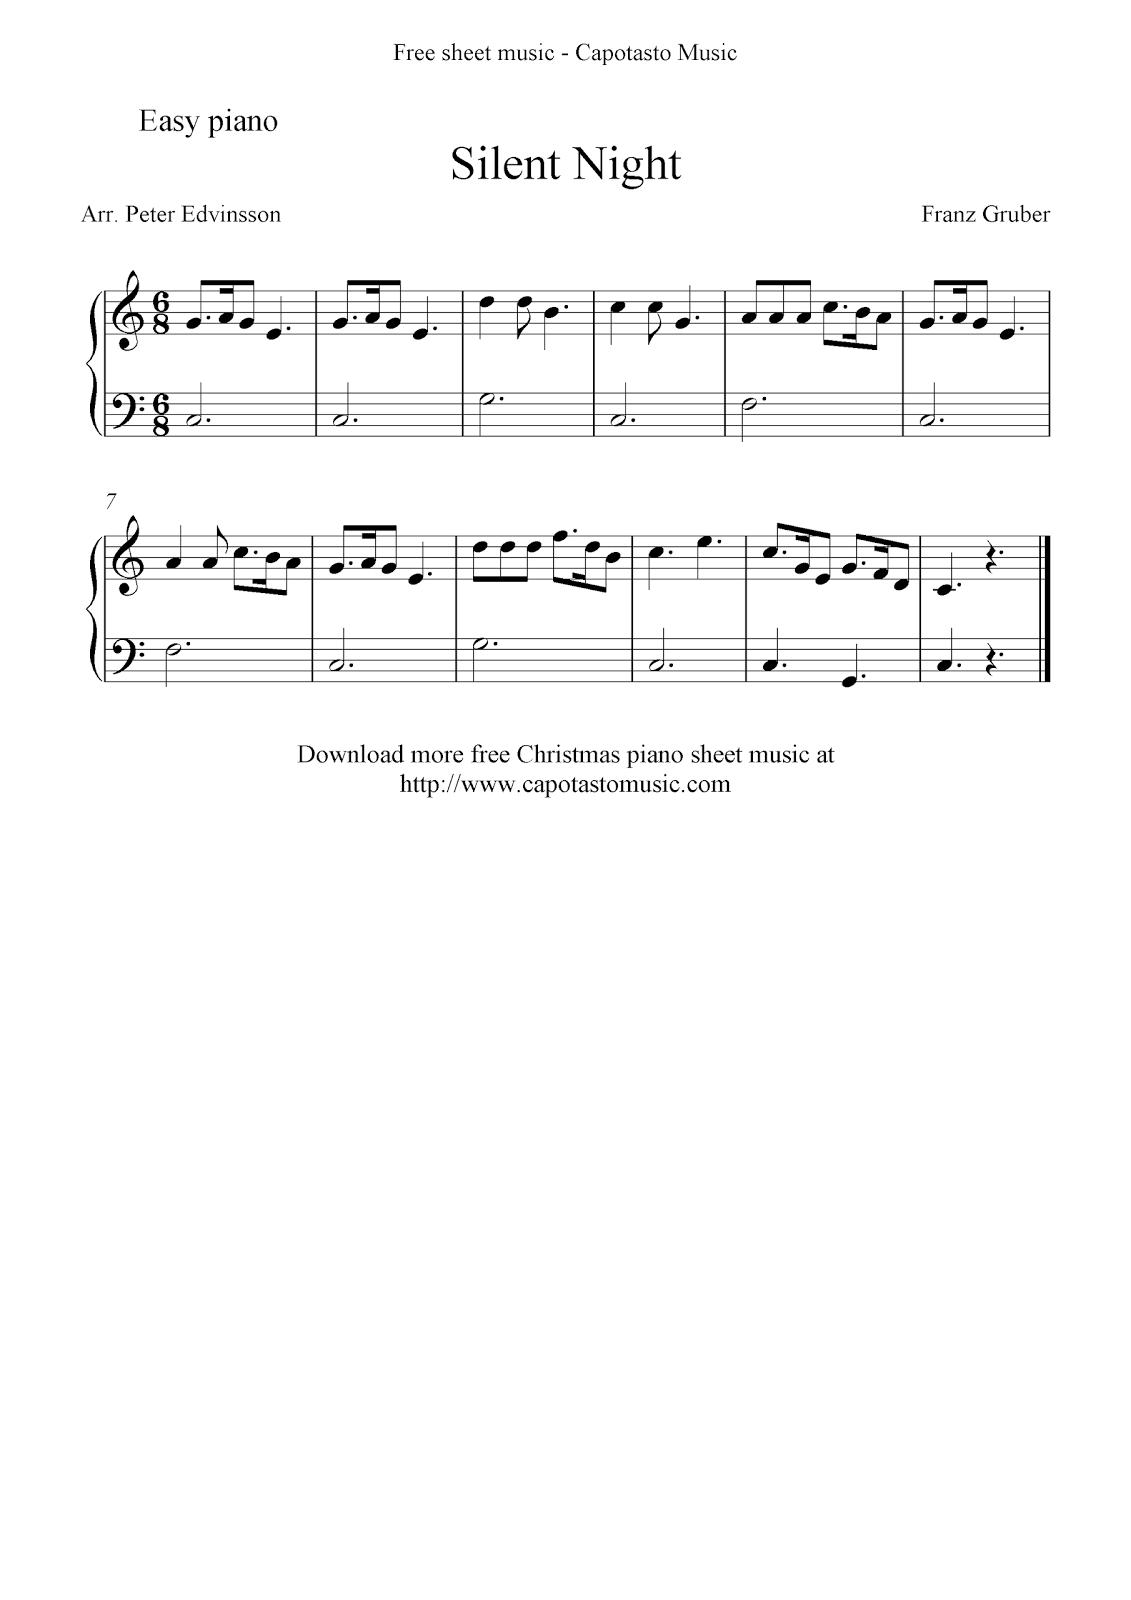 Free Printable Sheet Music: Free easy Christmas piano sheet music